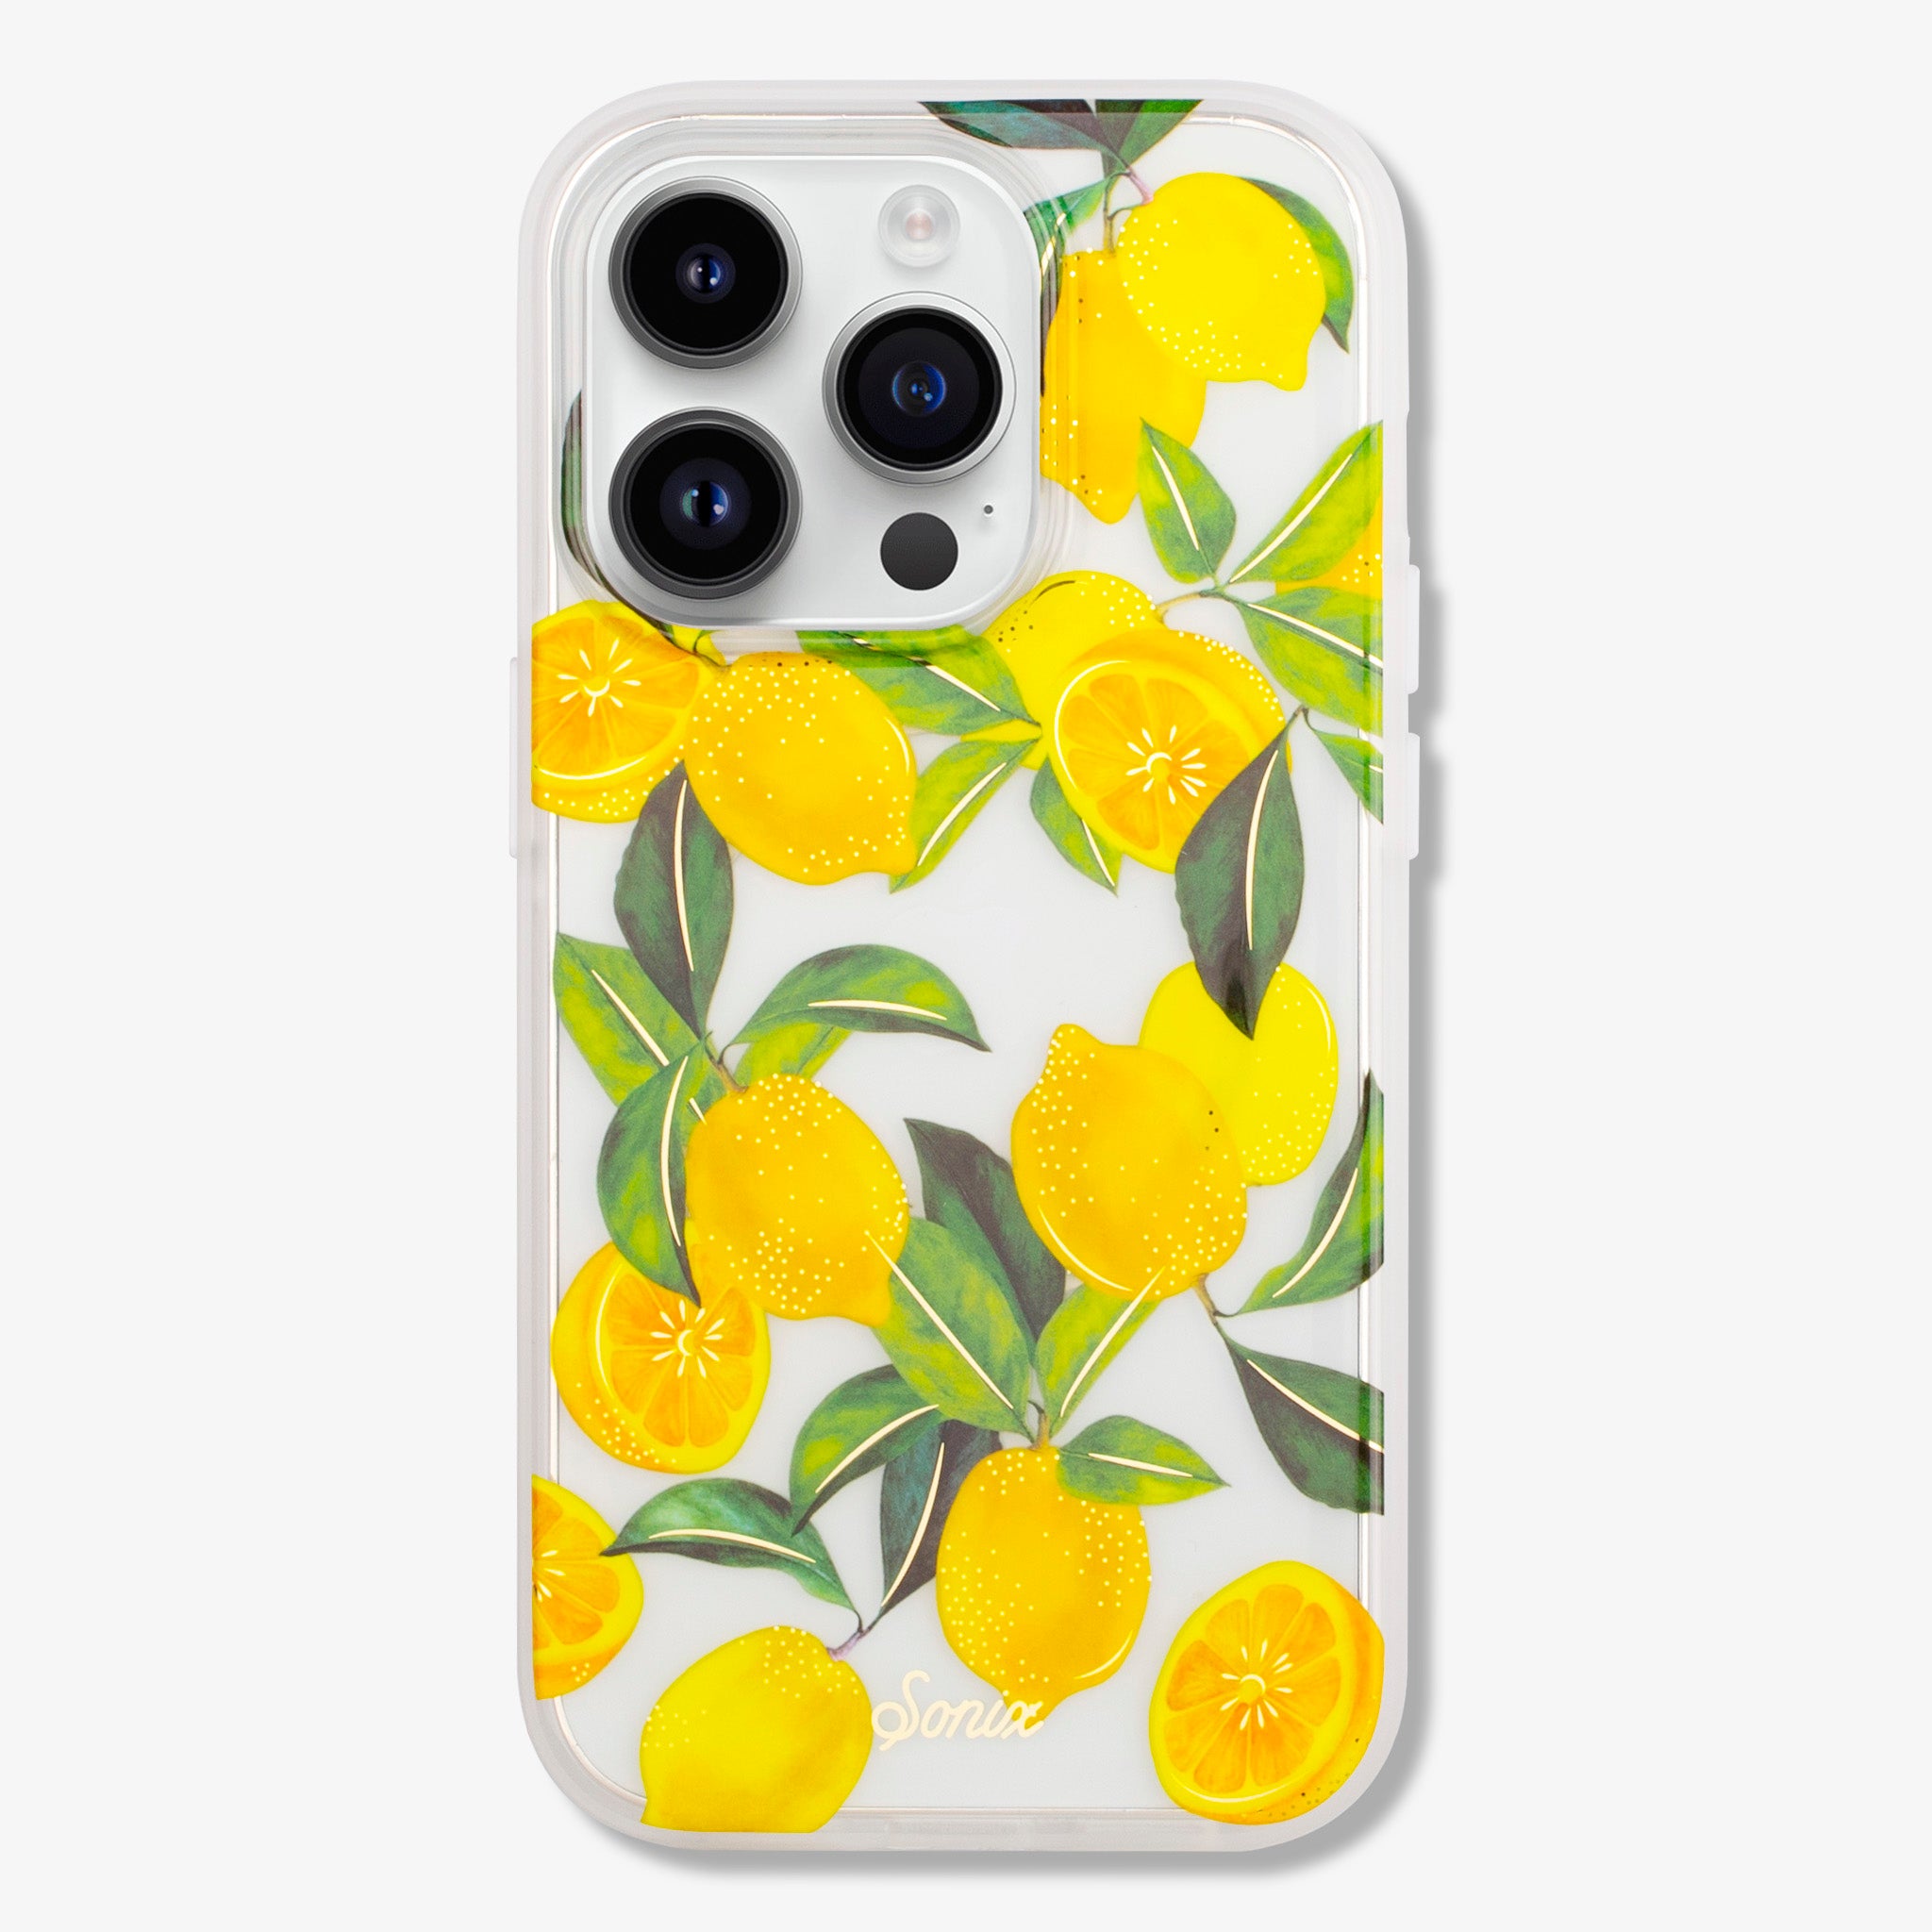 Lemon Zest MagSafe® Compatible iPhone Case